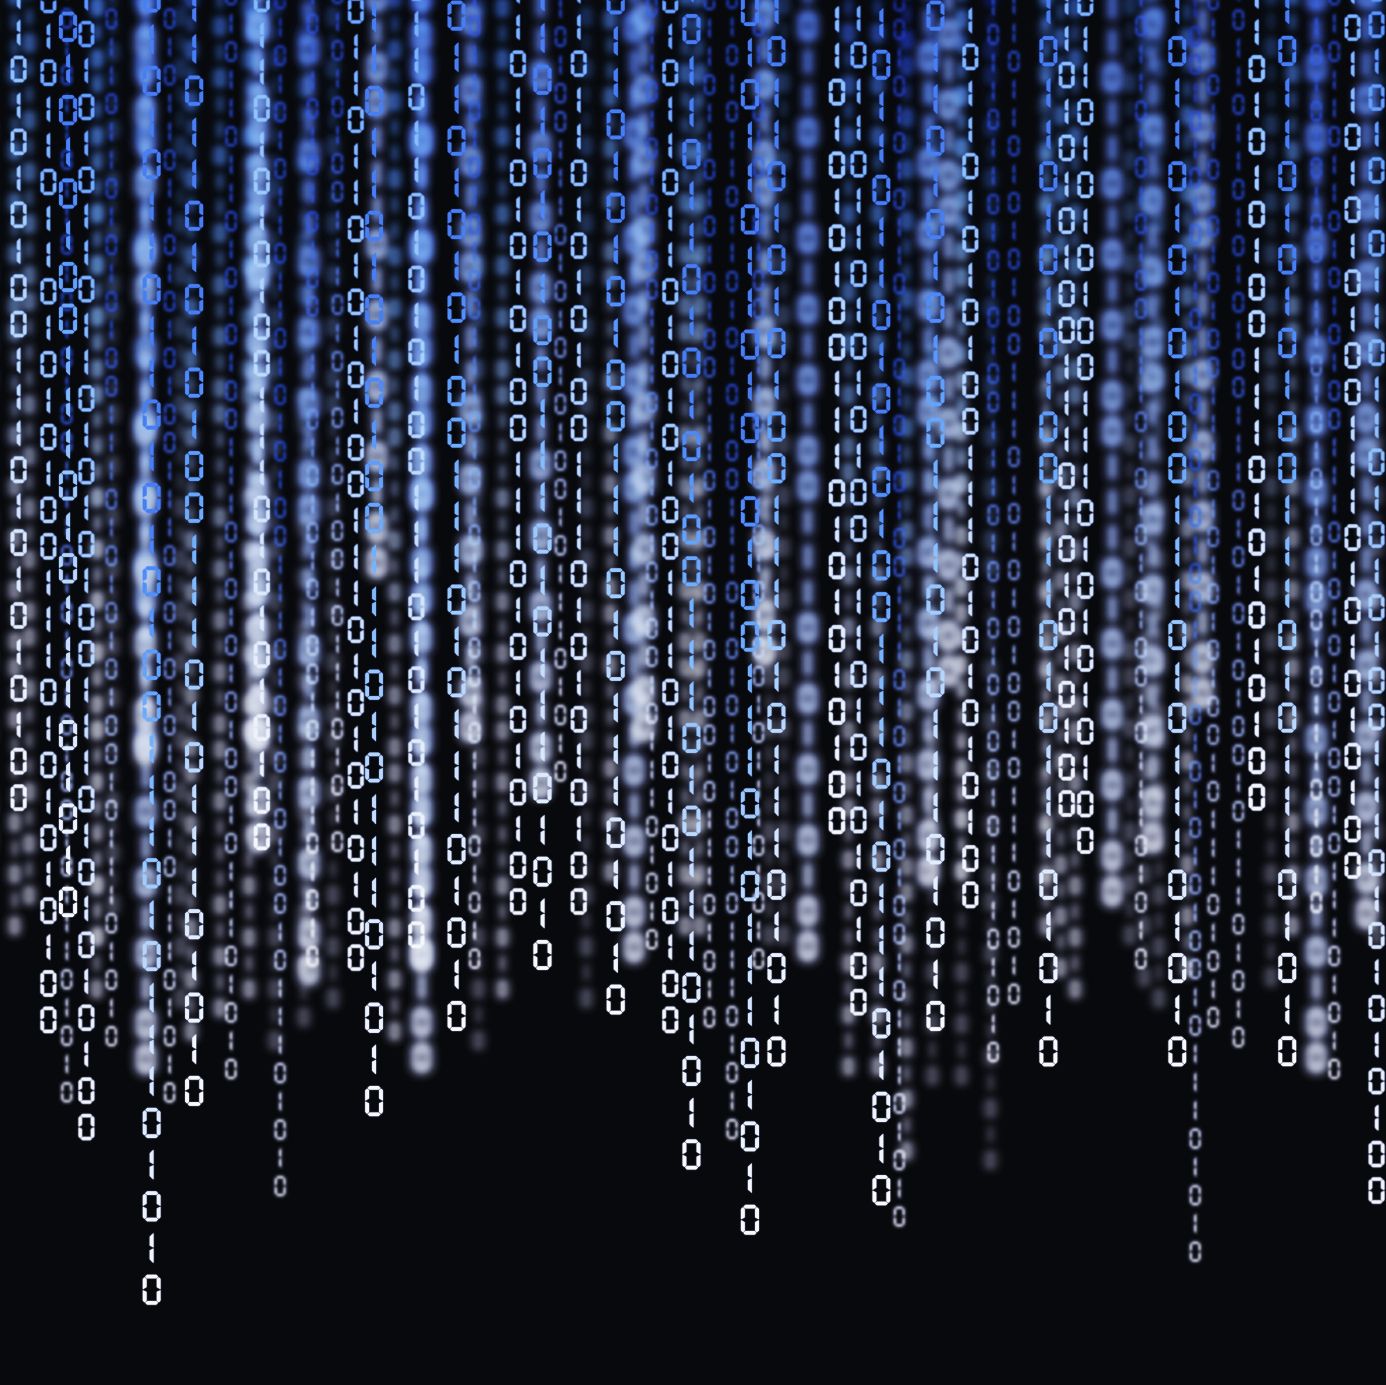 Matrixbild mit blauen Zahlen